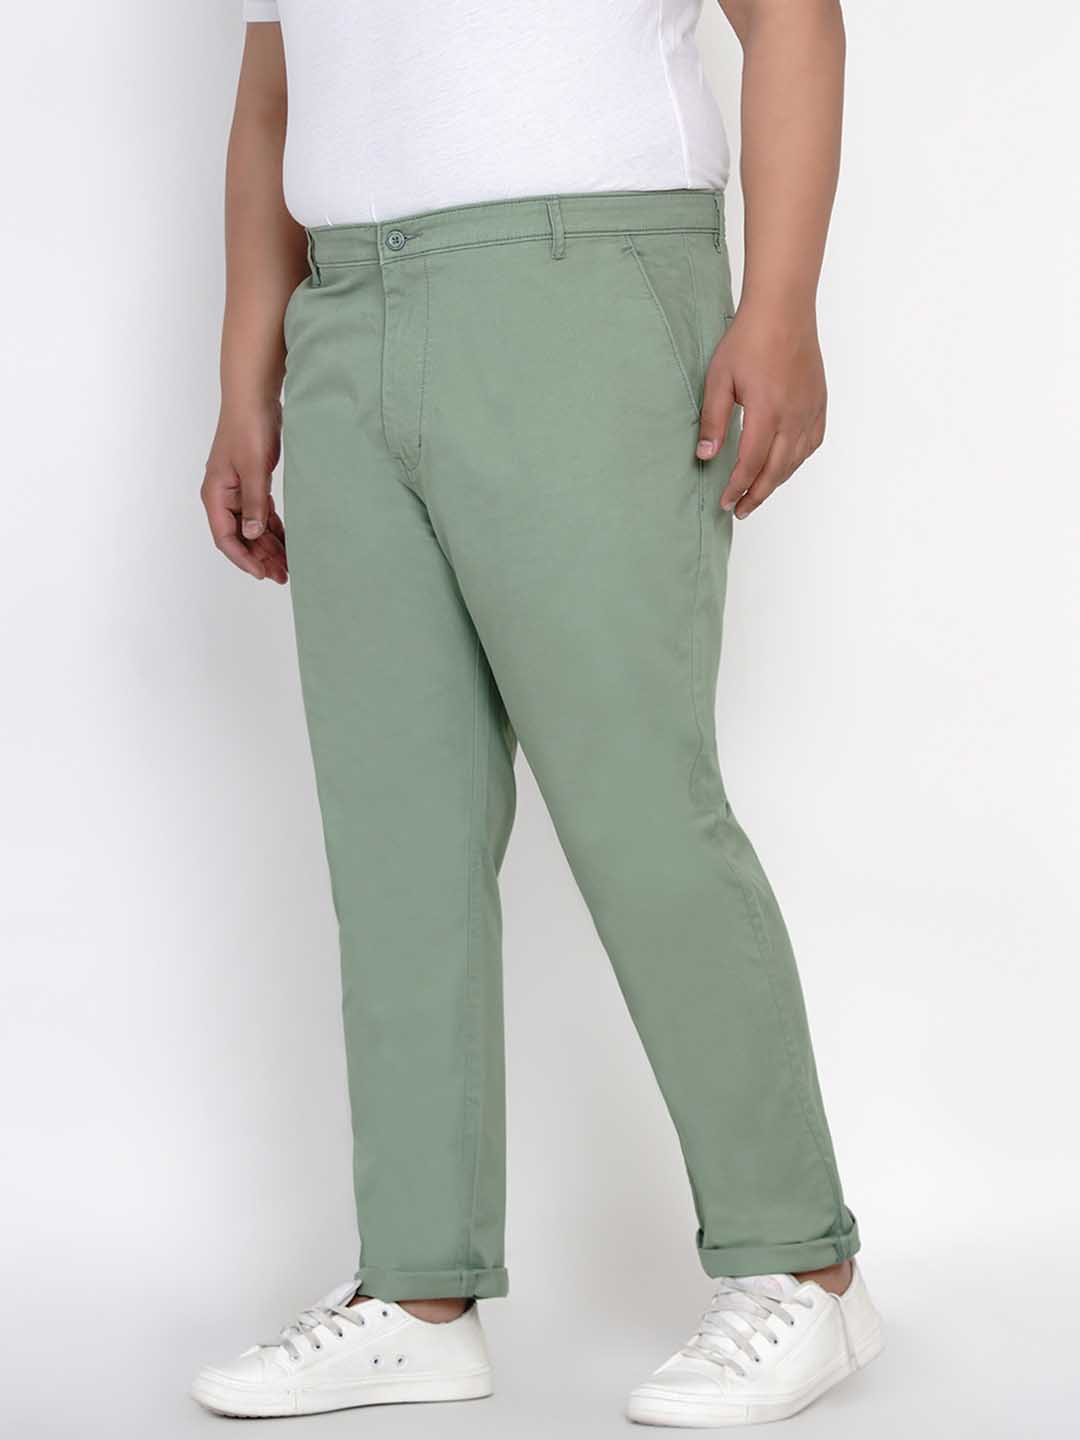 bottomwear/trousers/JPTR2195M/jptr2195m-3.jpg